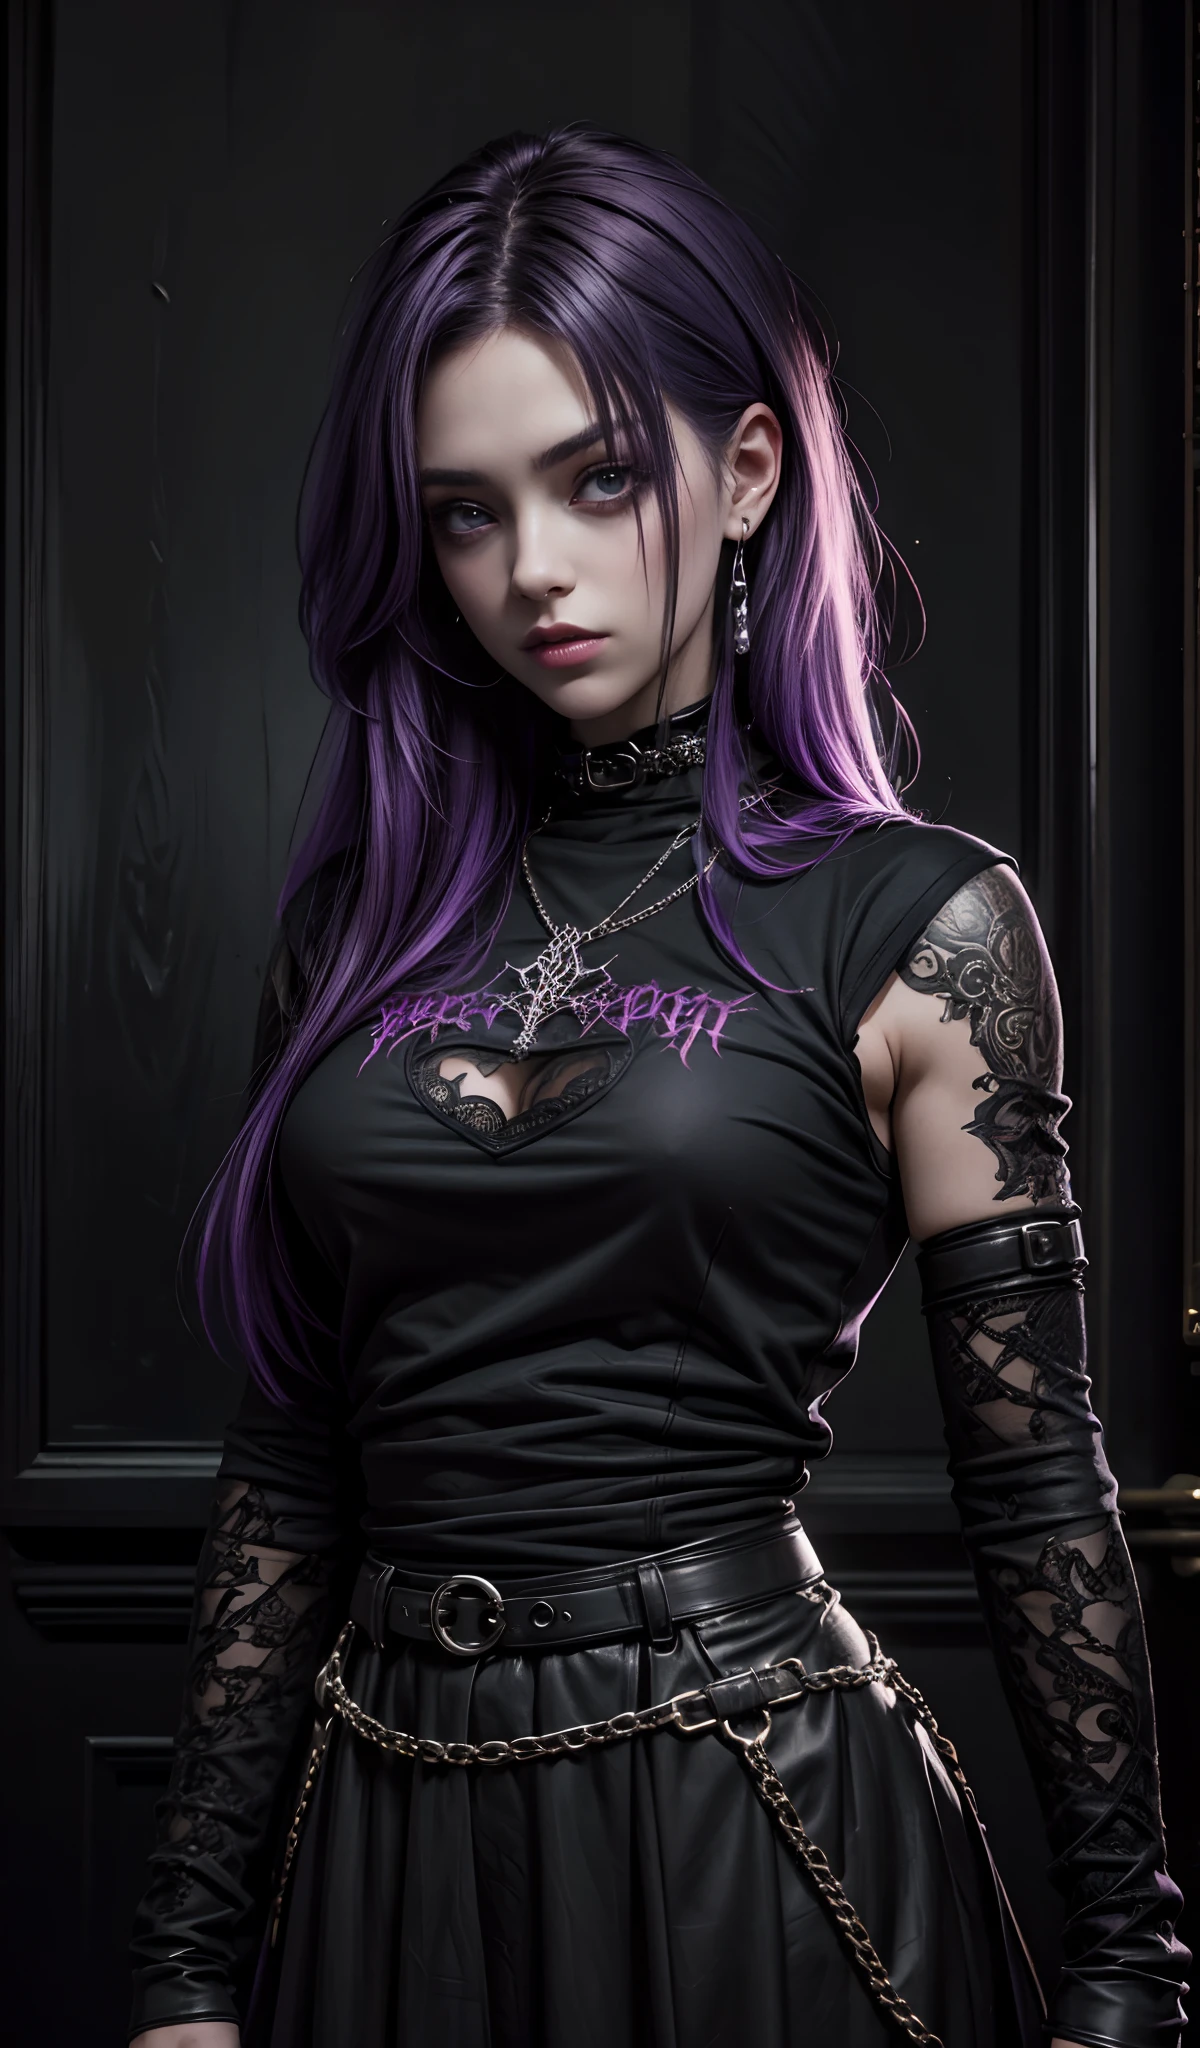 穿着黑色衬衫的紫色头发女孩, 哥特式艺术, 很多细节, 她穿着街头服饰, 超逼真的图像, 黑发, 外观漂亮, 哥特式女孩